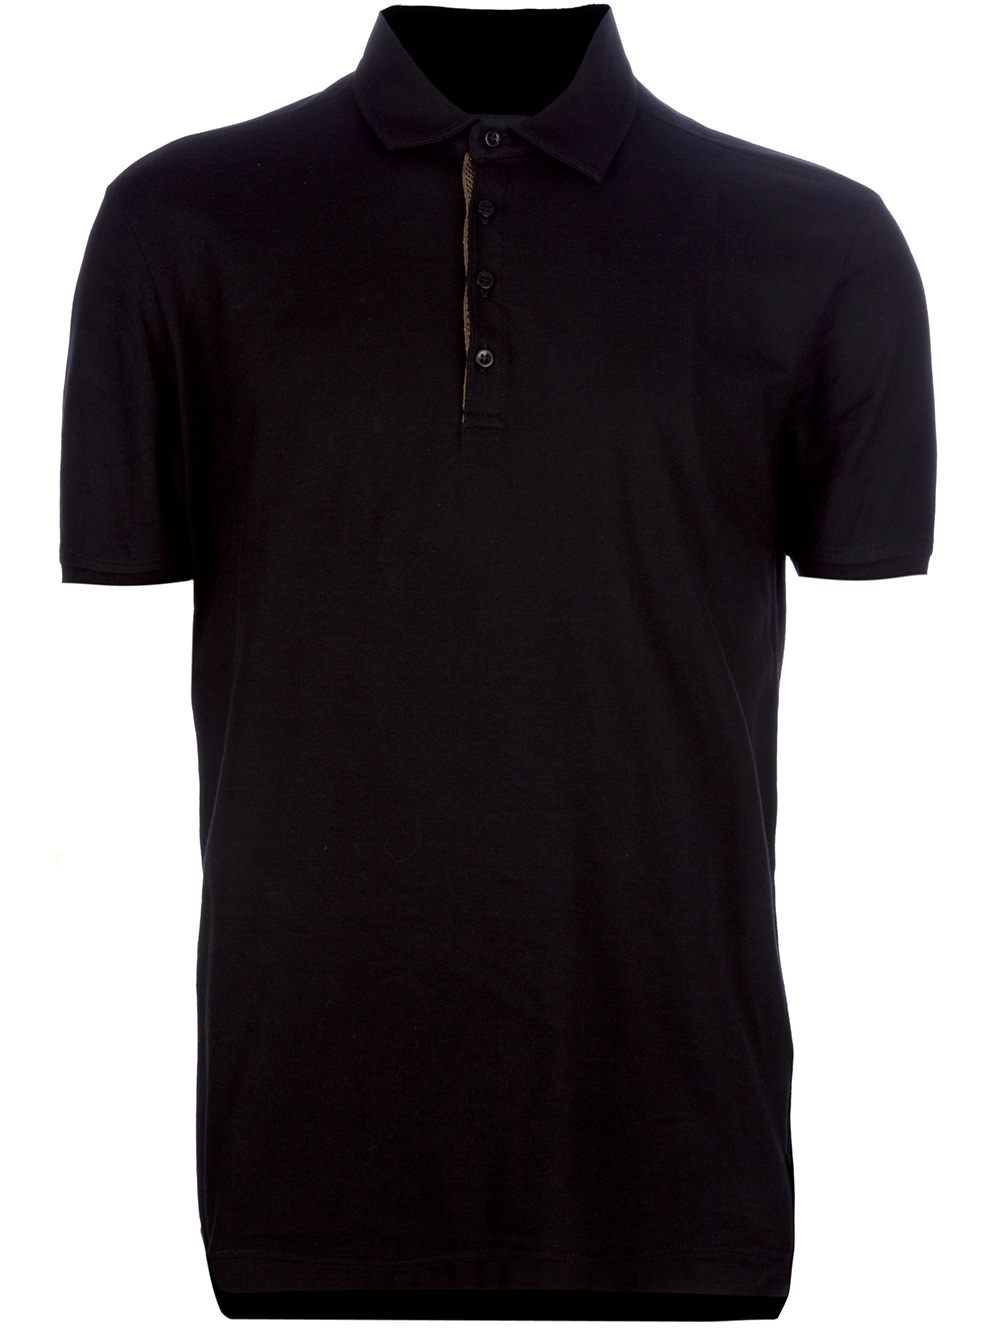 Fendi Polo Shirt in Black for Men - Lyst